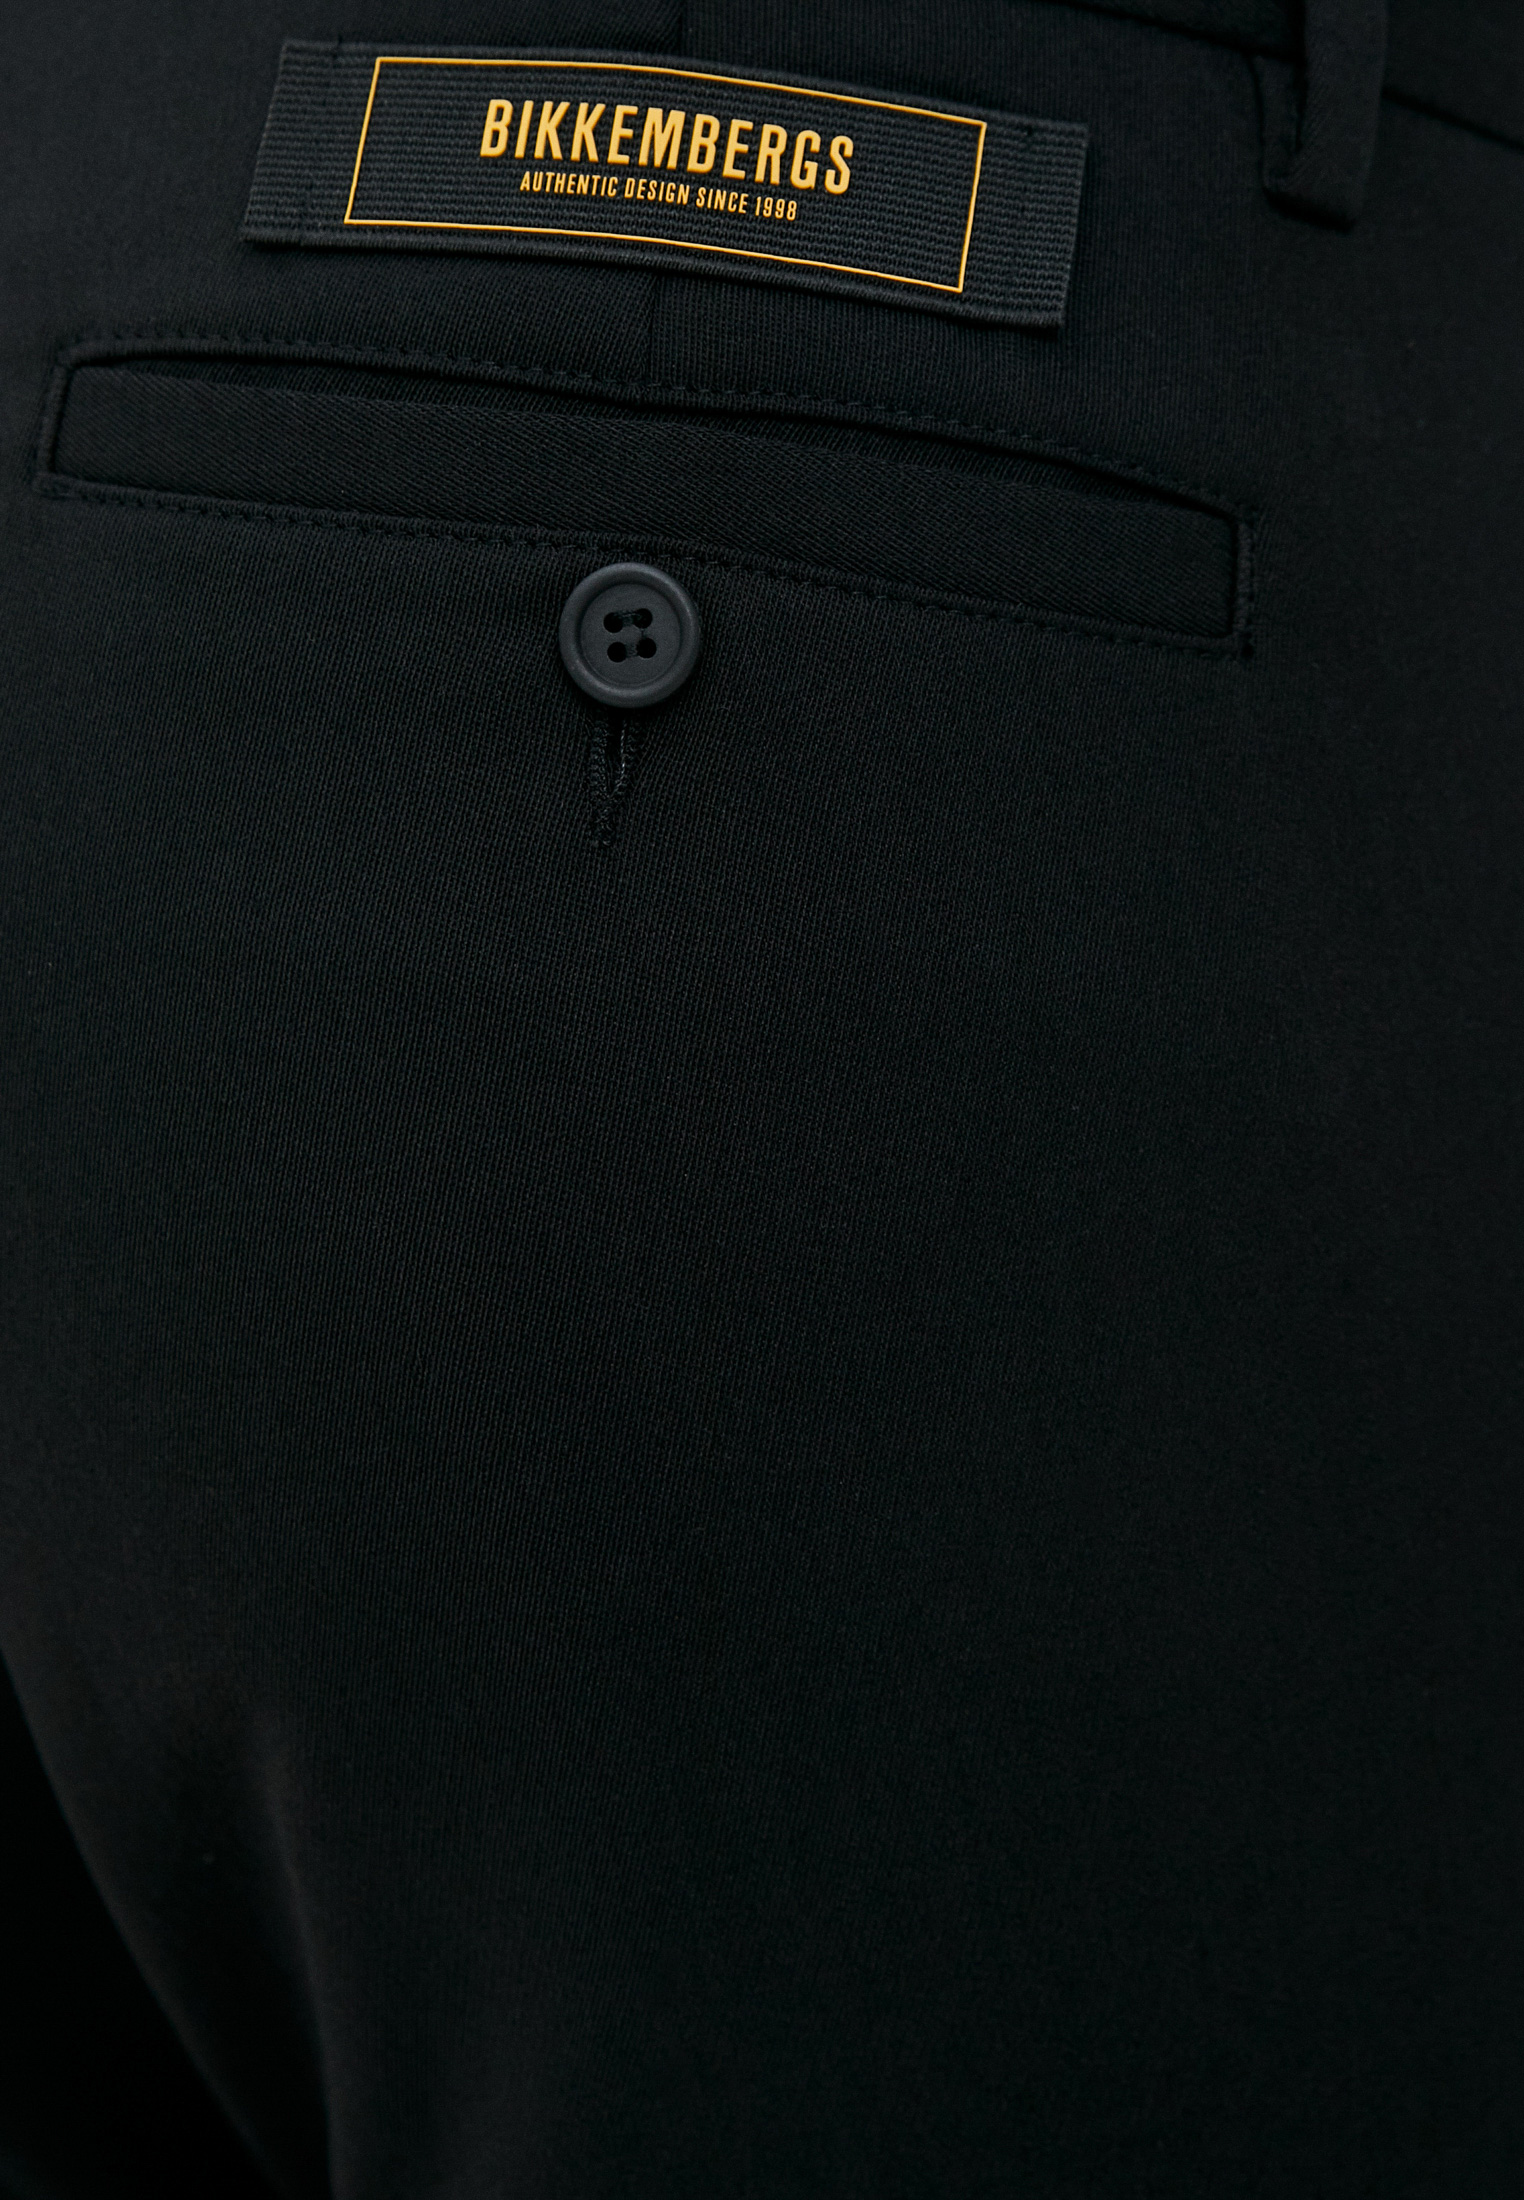 Мужские повседневные брюки Bikkembergs (Биккембергс) C P 001 00 S 3331: изображение 10